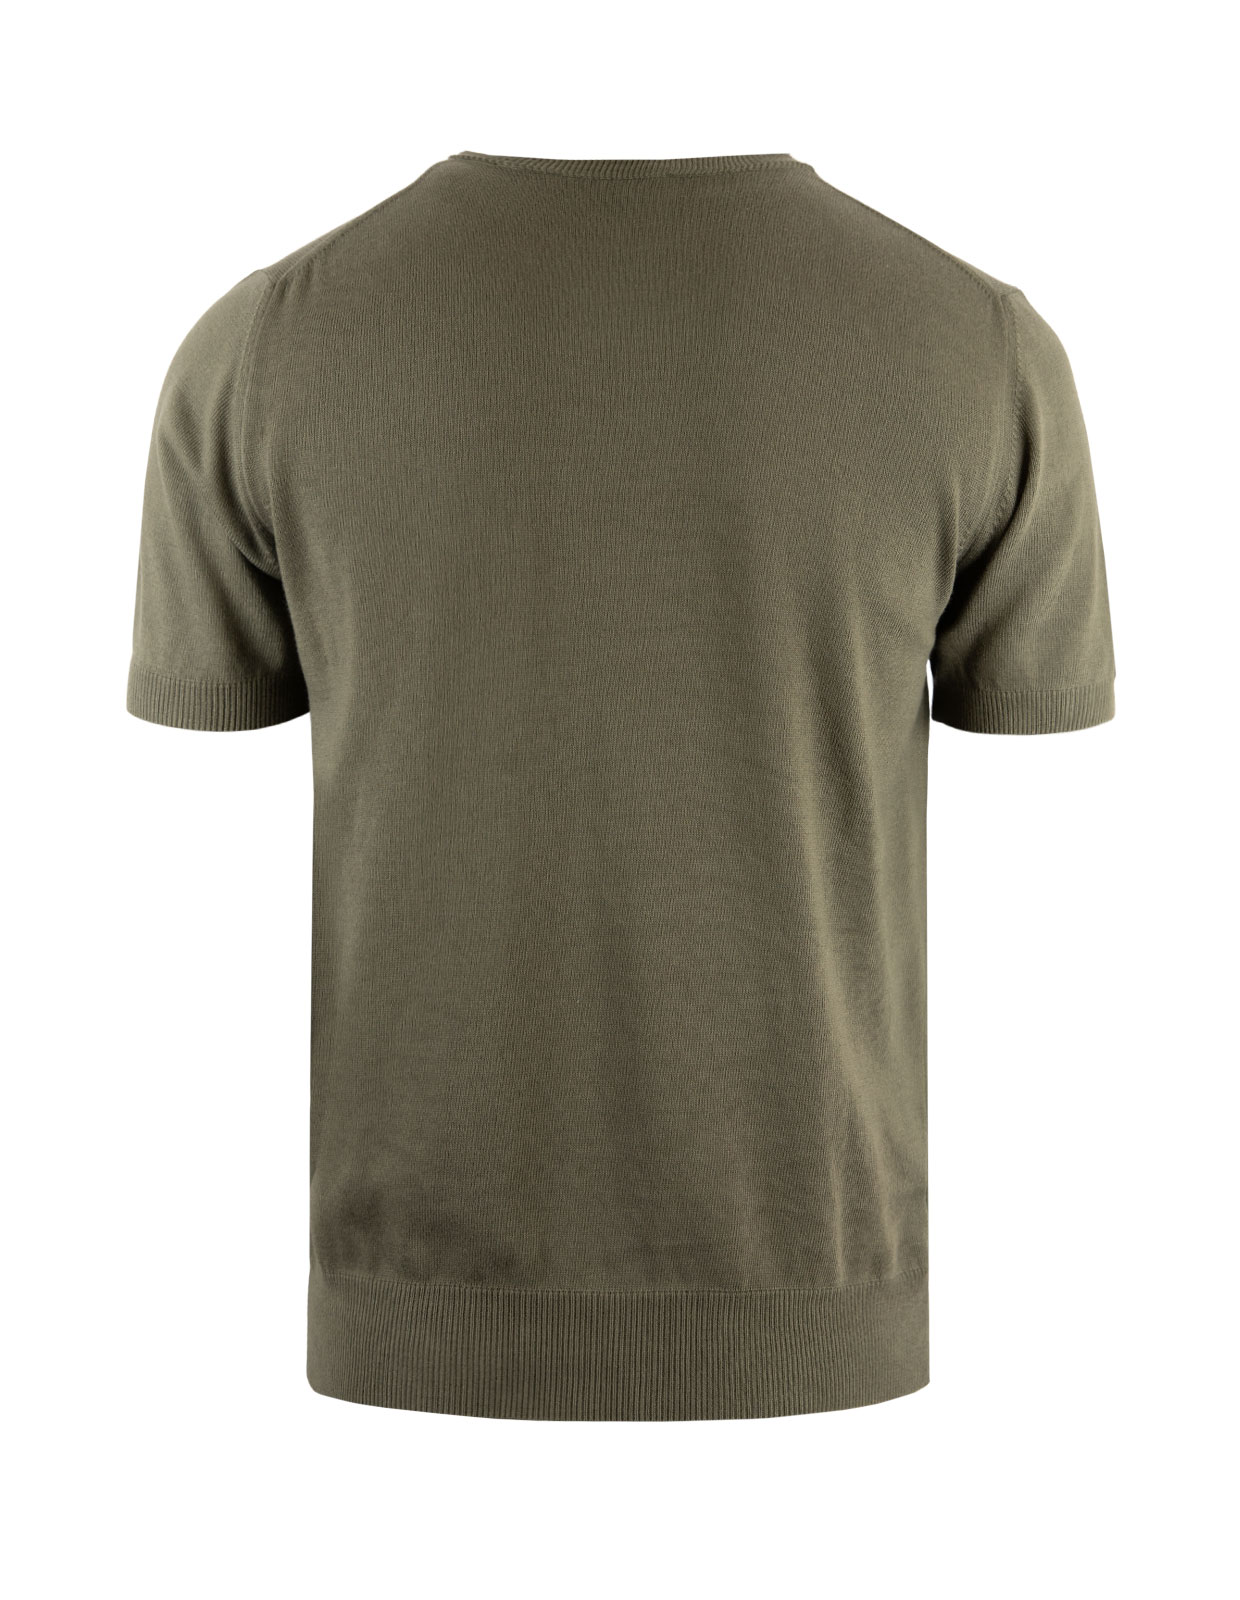 T-shirt Finstickad Bomull Militärgrön Stl XL